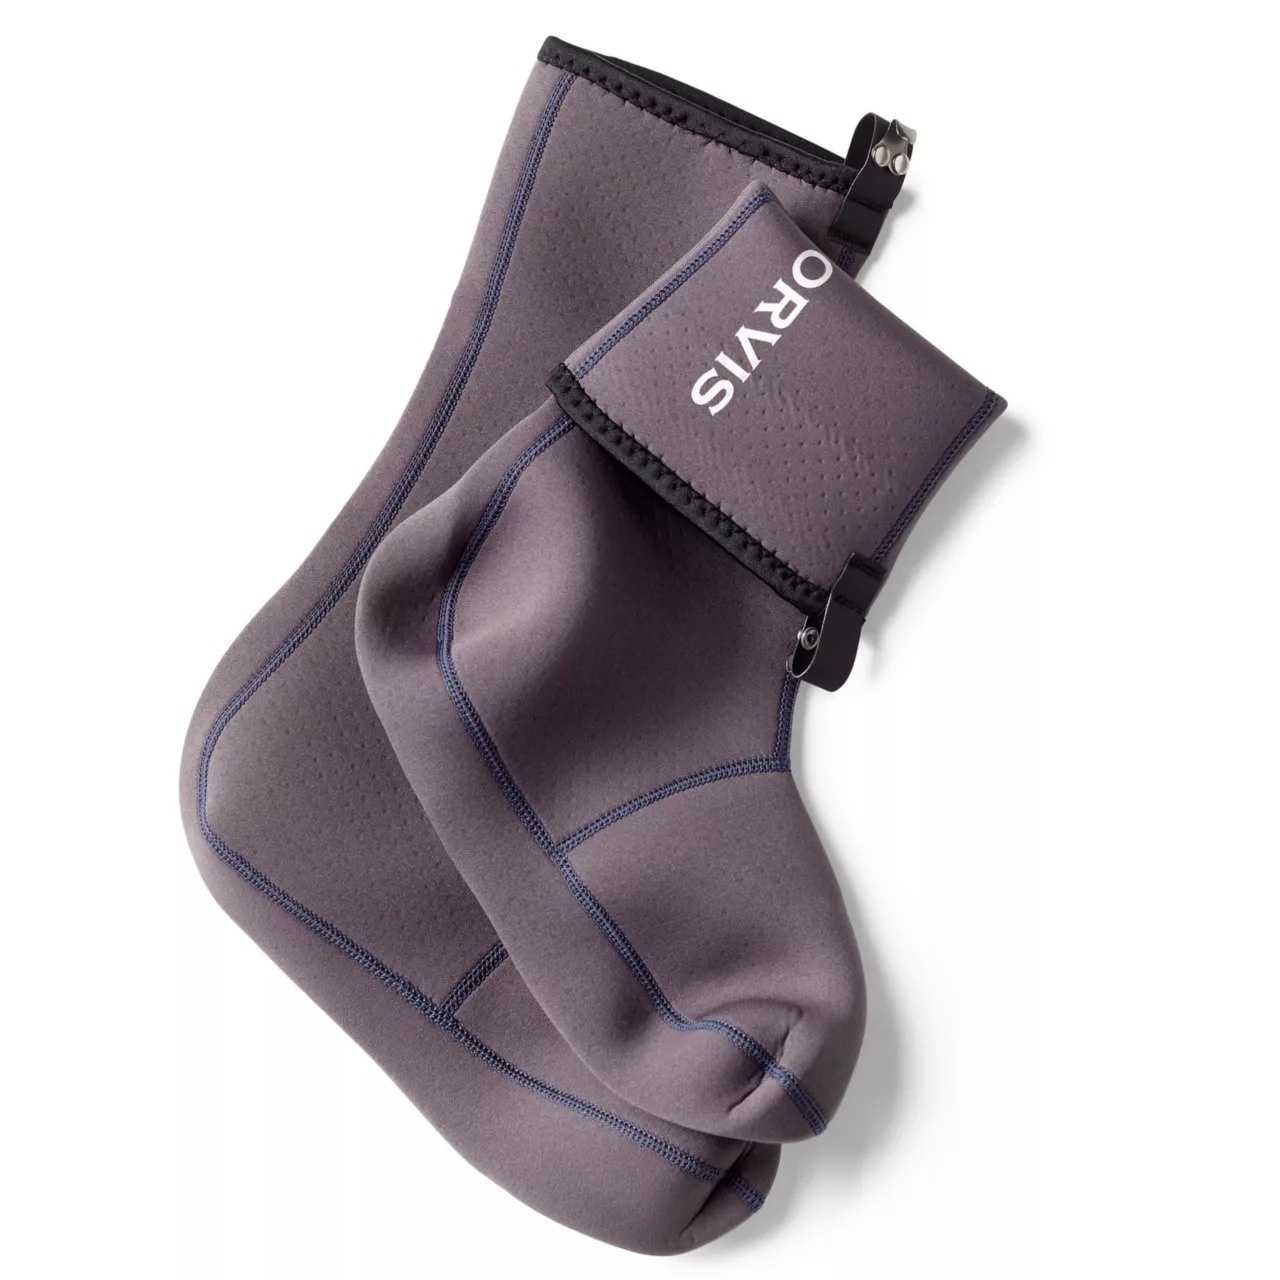 Orvis Neoprene Socks 0,5mm 